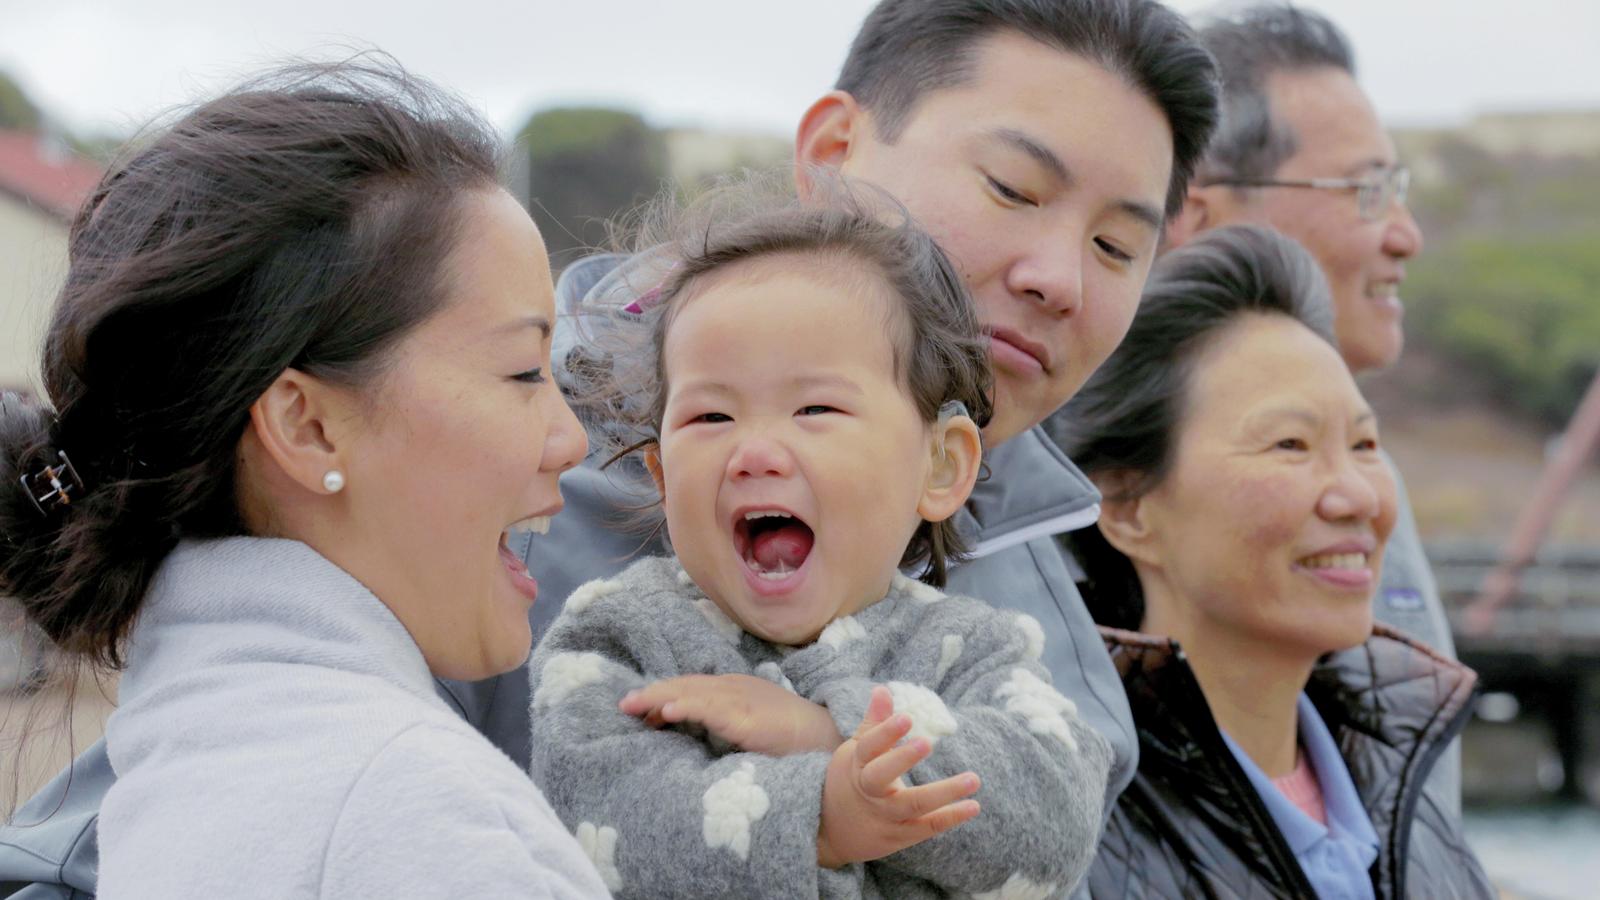 Ihre Familie lacht während eines Ausflugs